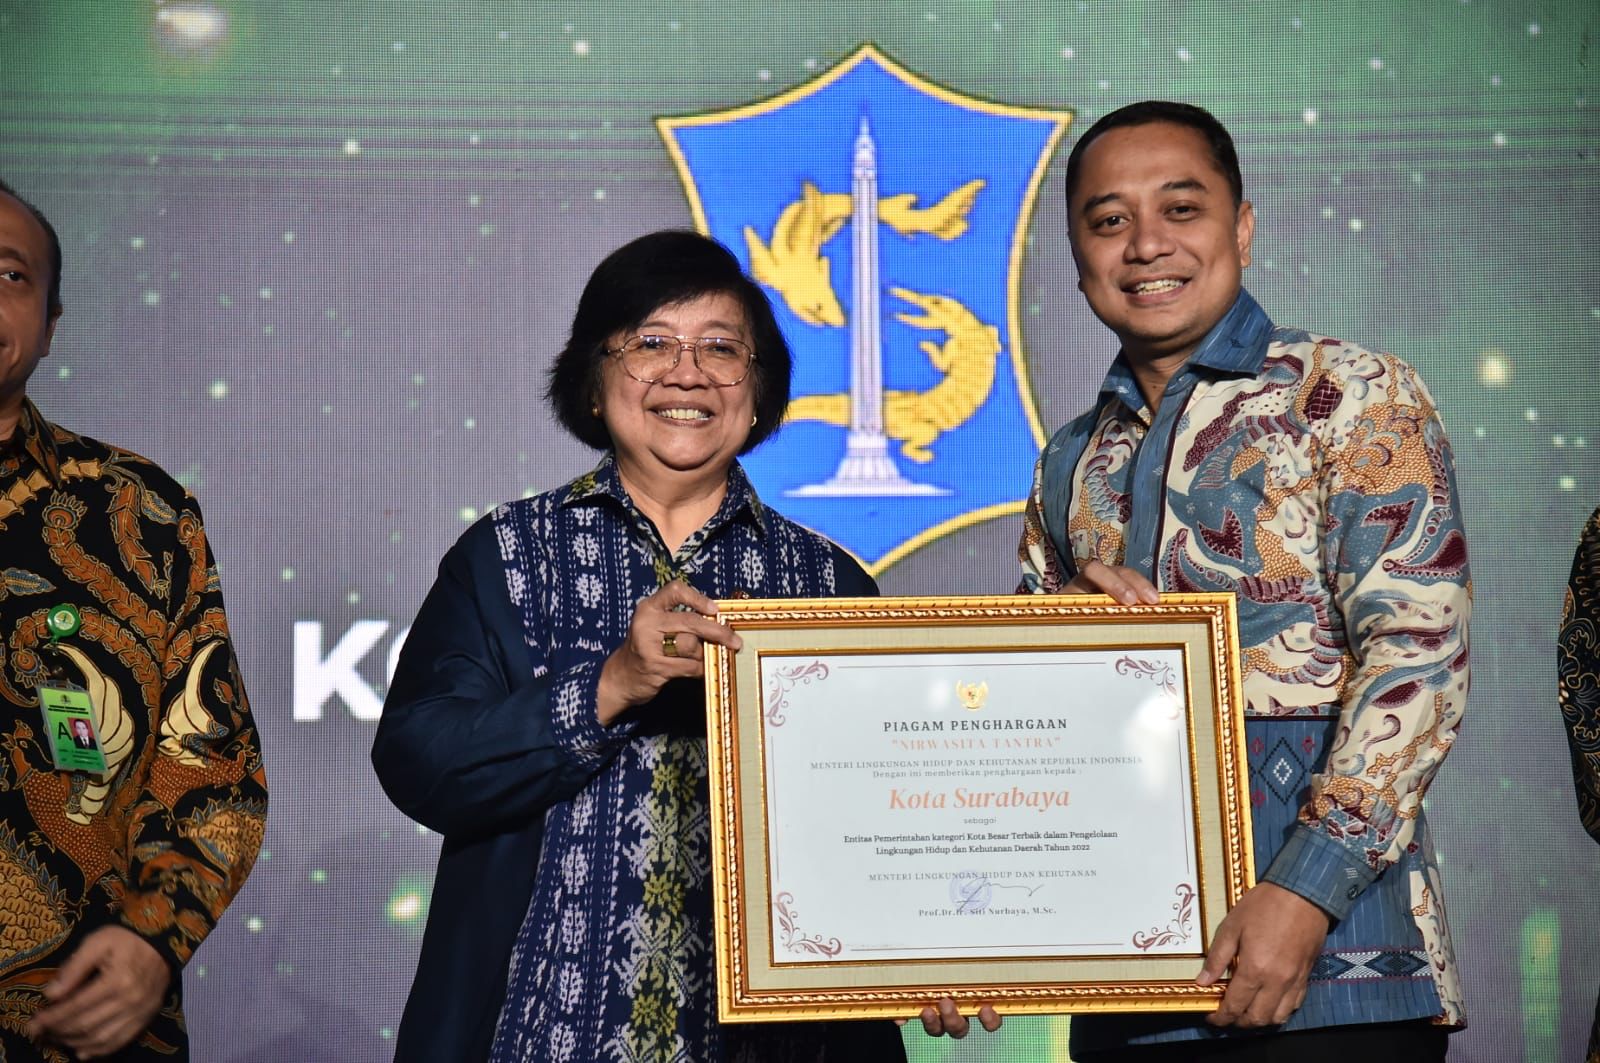 Eri Cahyadi menerima penghargaan Nirwasita Tantra dari KLHK kemarin, Selasa (29/8/2023). Foto: Diskominfo Kota Surabaya